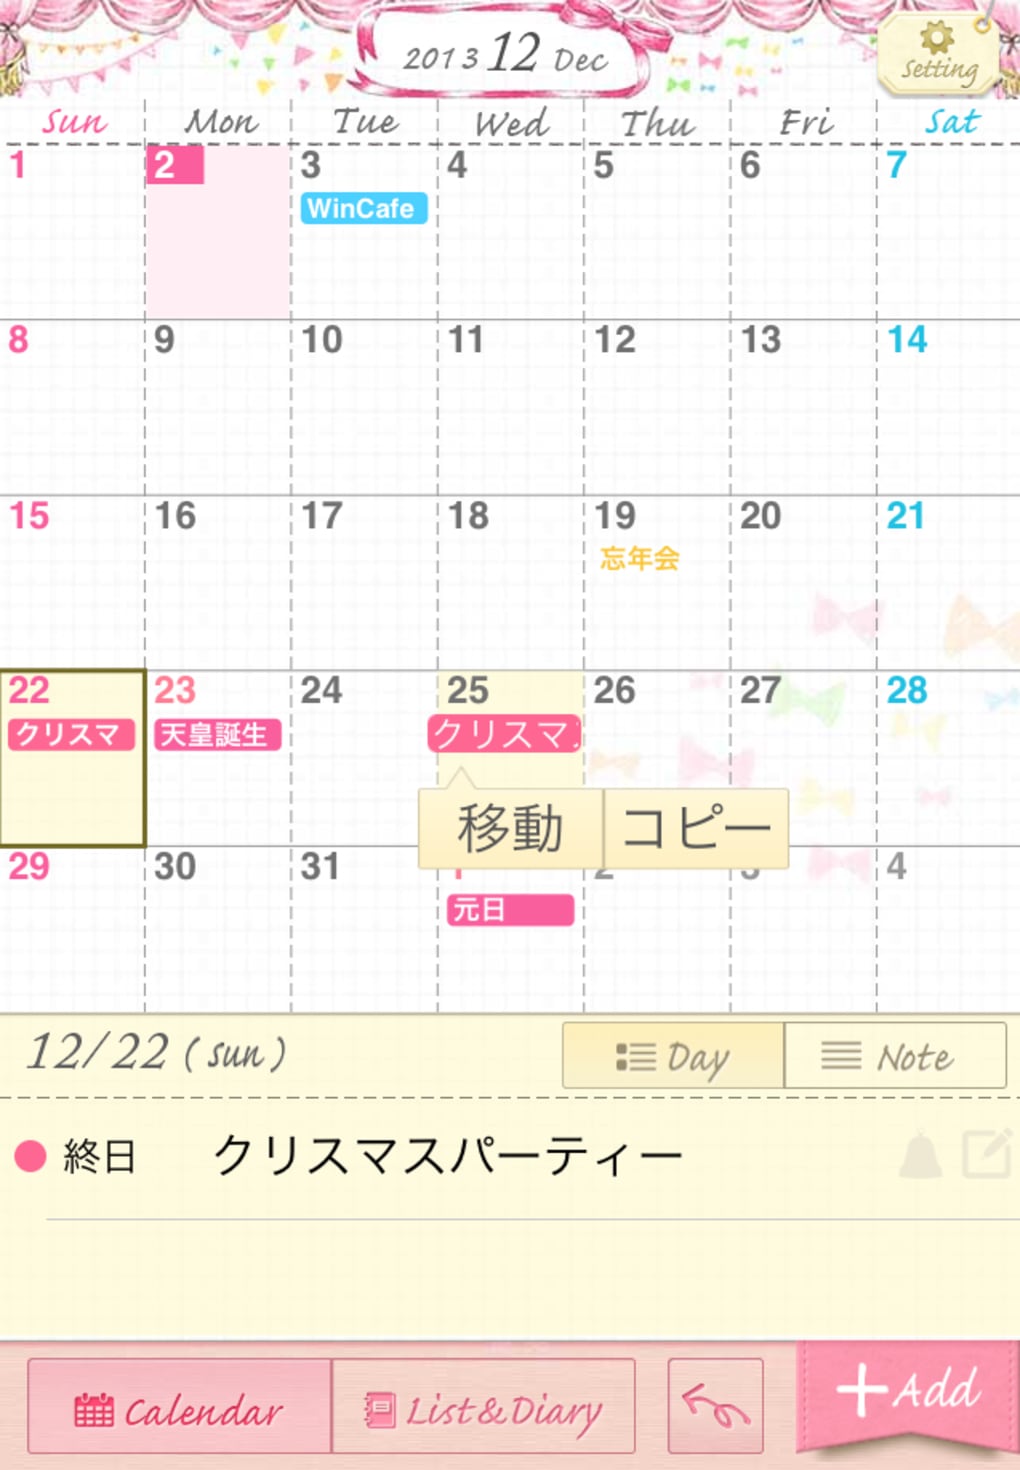 コレットカレンダー For Iphone ダウンロード